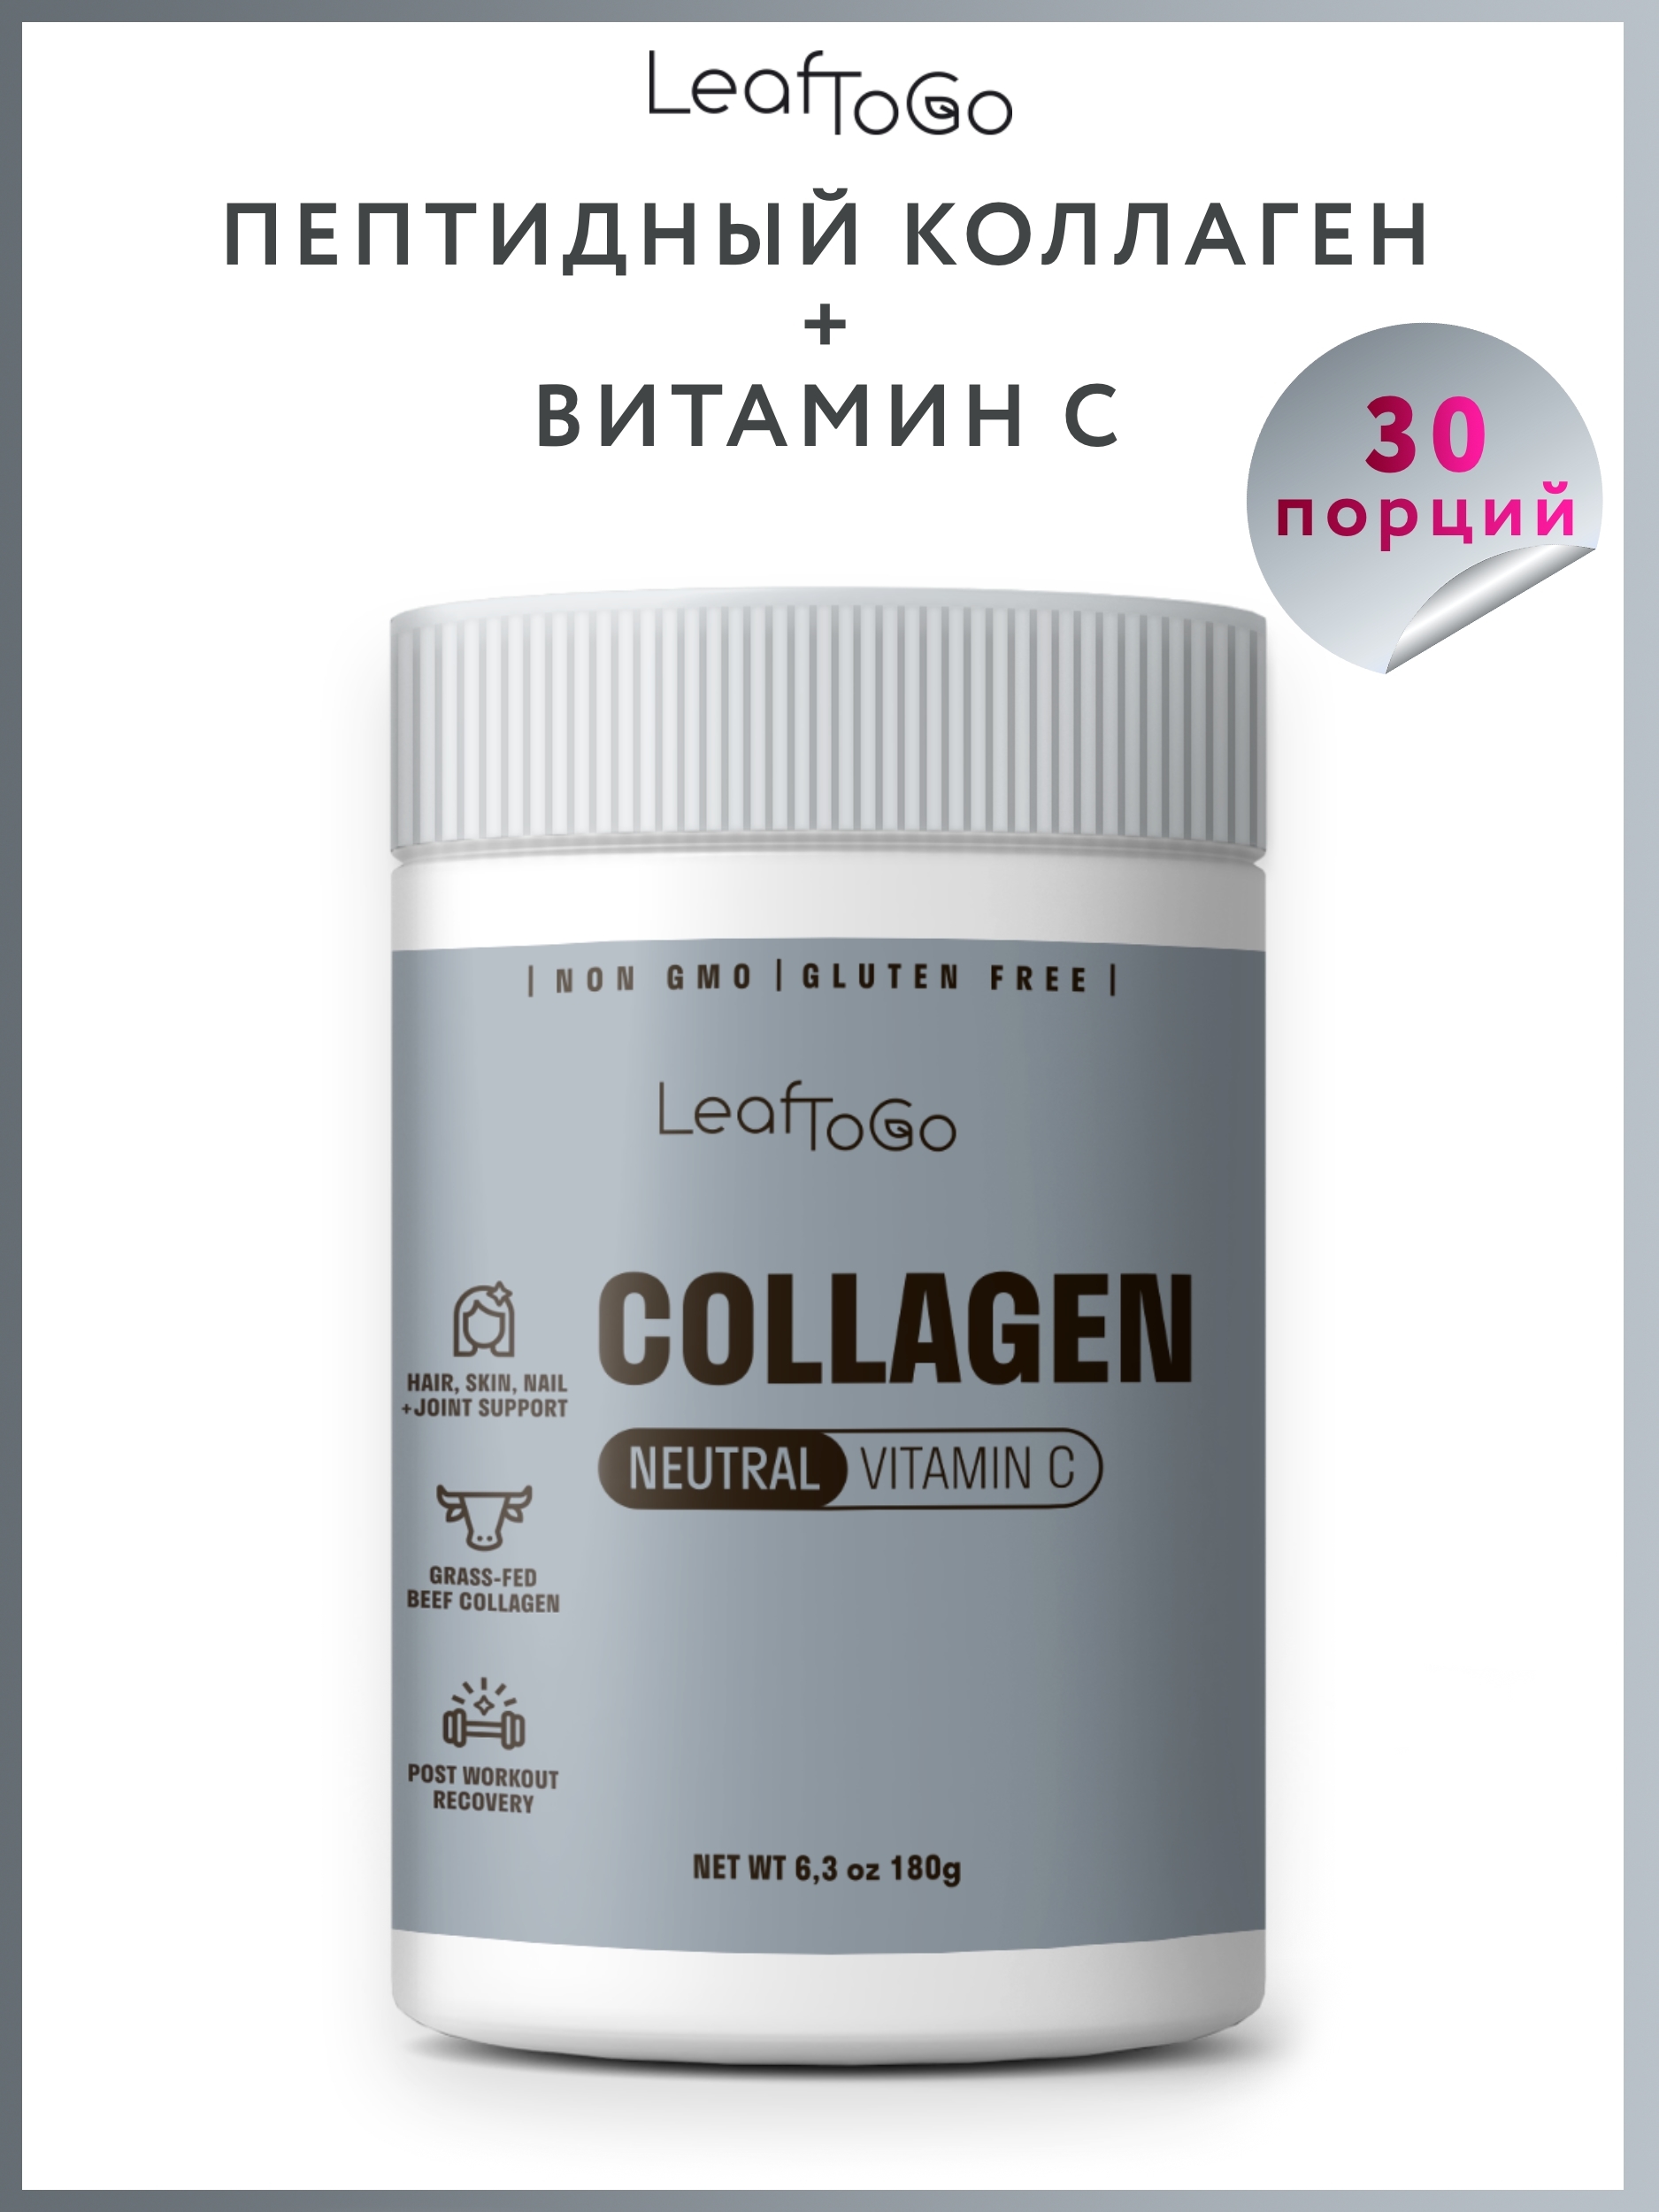 Collagen vitamin c отзывы. Коллаген порошок leaftogo. Коллаген leaftogo витамины. Коллаген Neutral Vitamin c leaftogo. Leaftogo / коллаген пептидный + витамин c 180 г 30 порций.